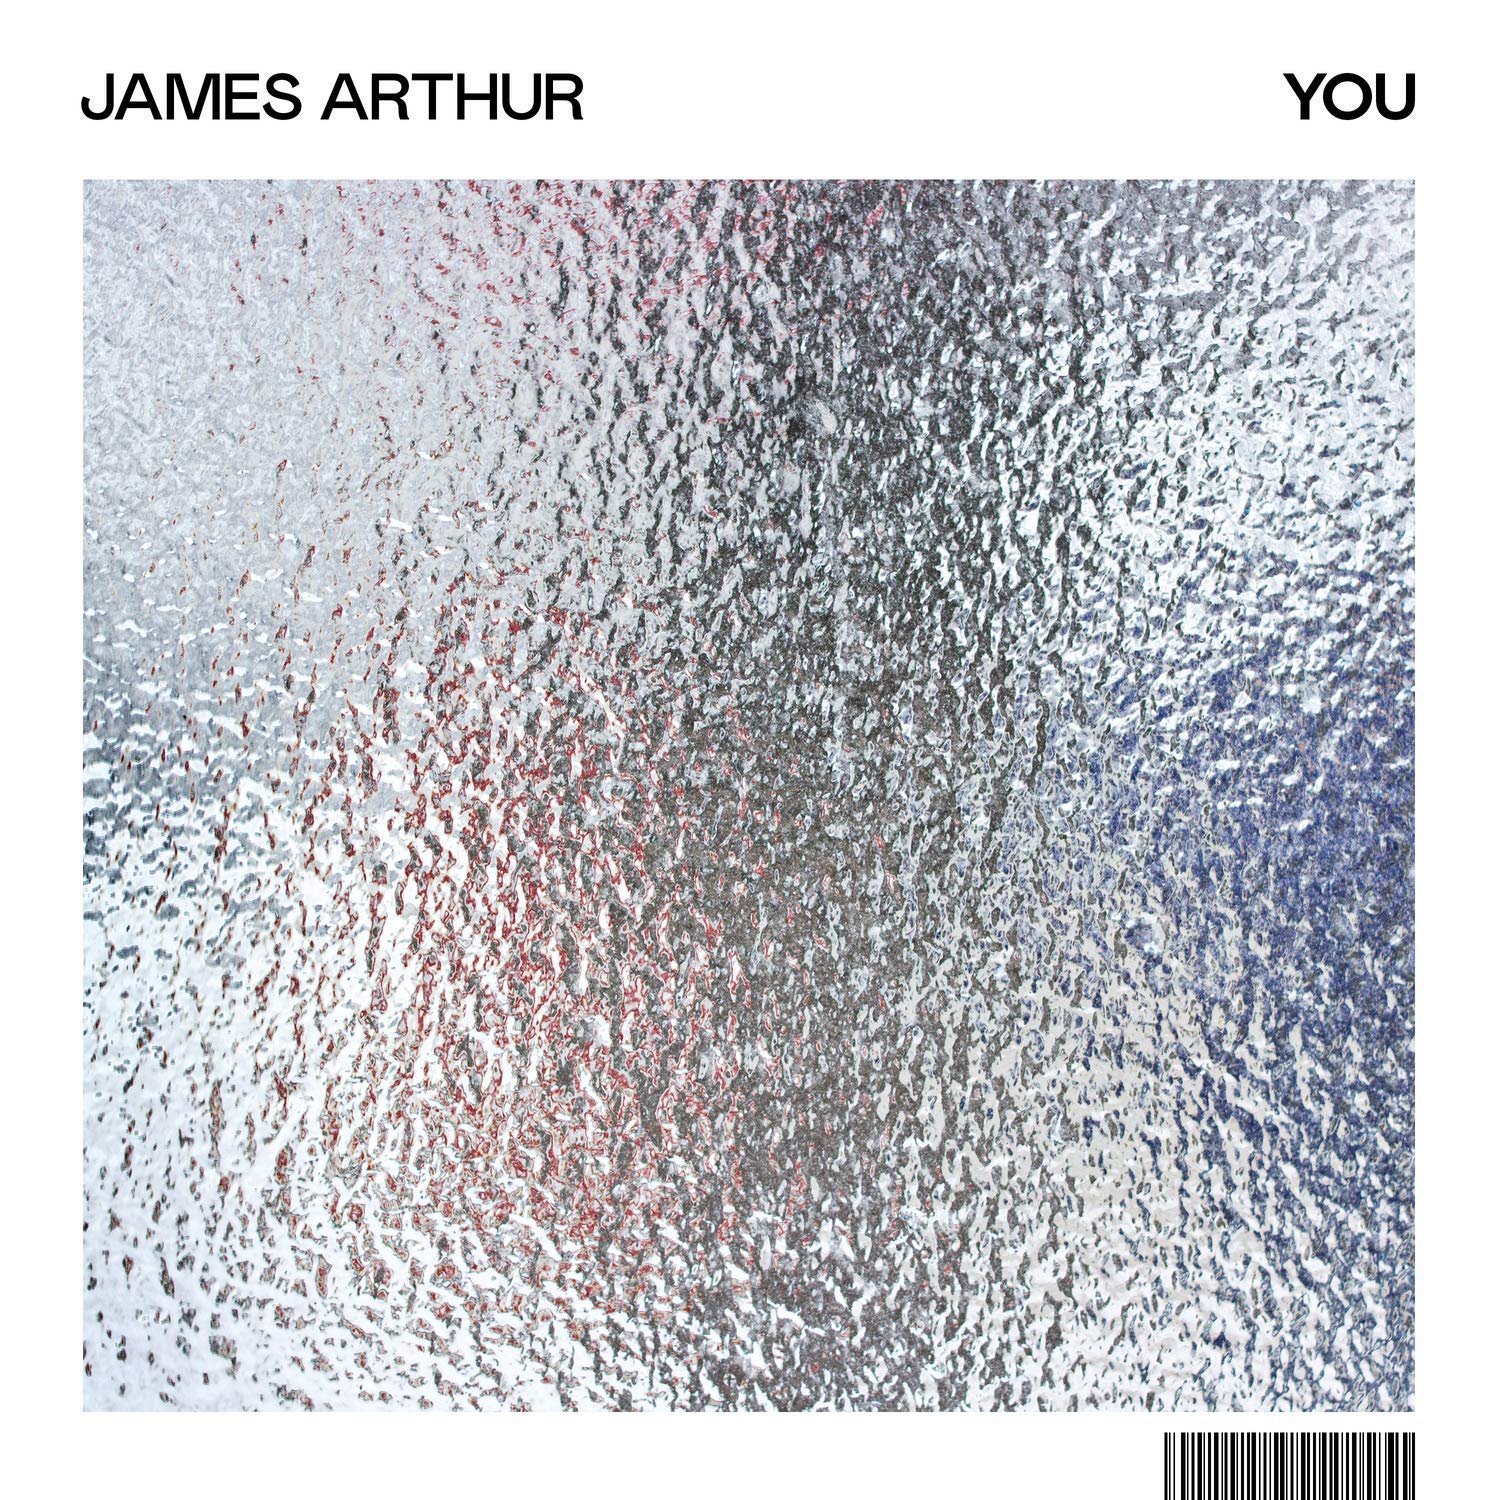 James Arthur - YOU (2019) [FLAC 24bit/44,1kHz]